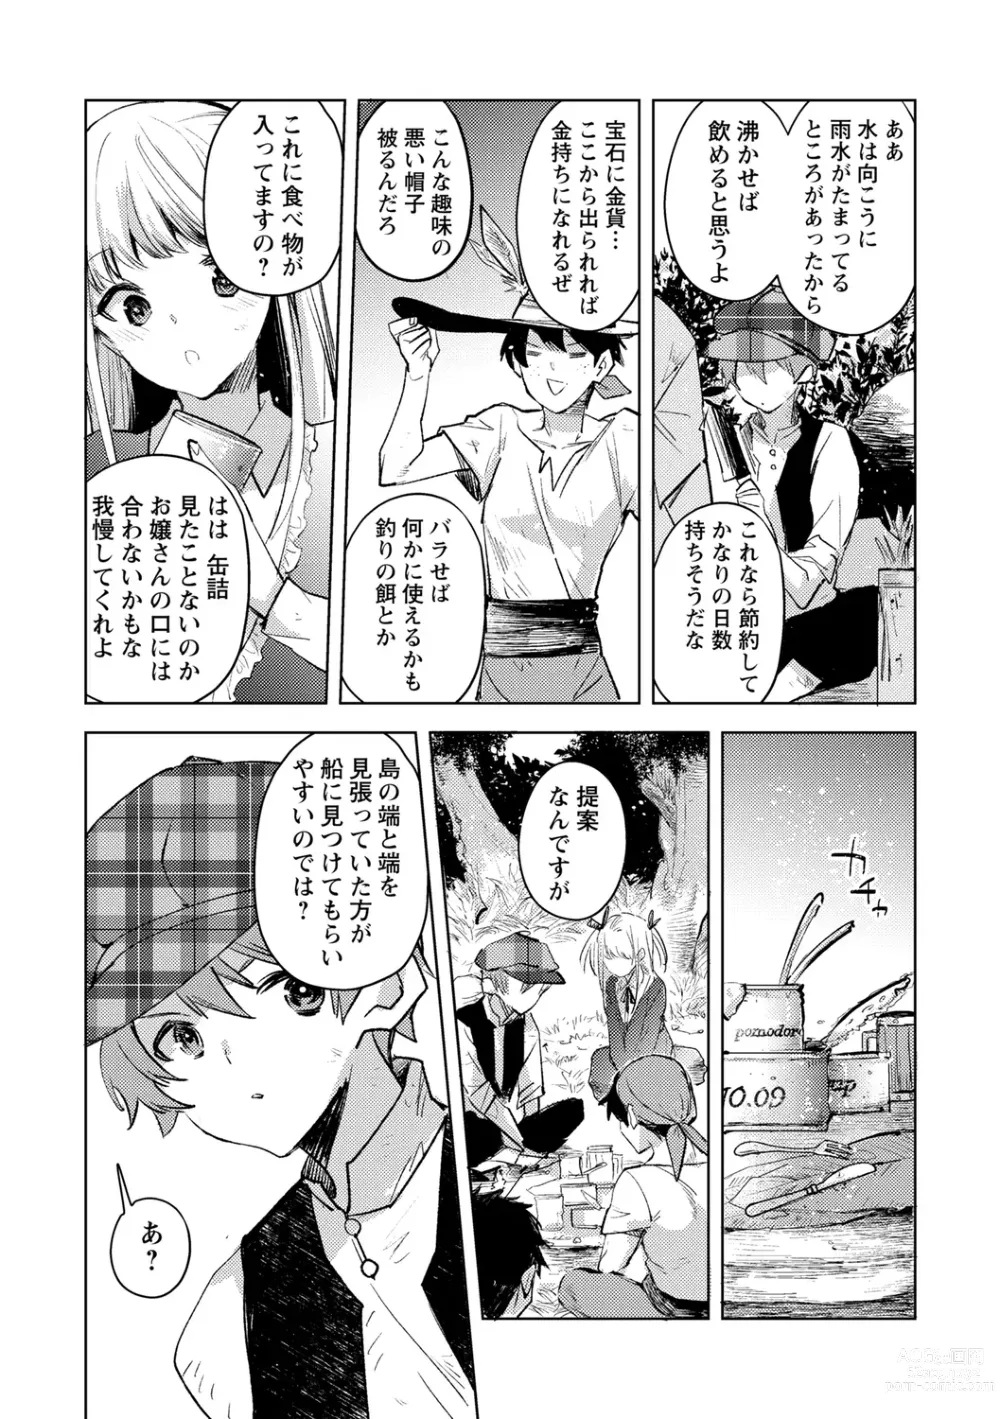 Page 13 of manga Bad endroll